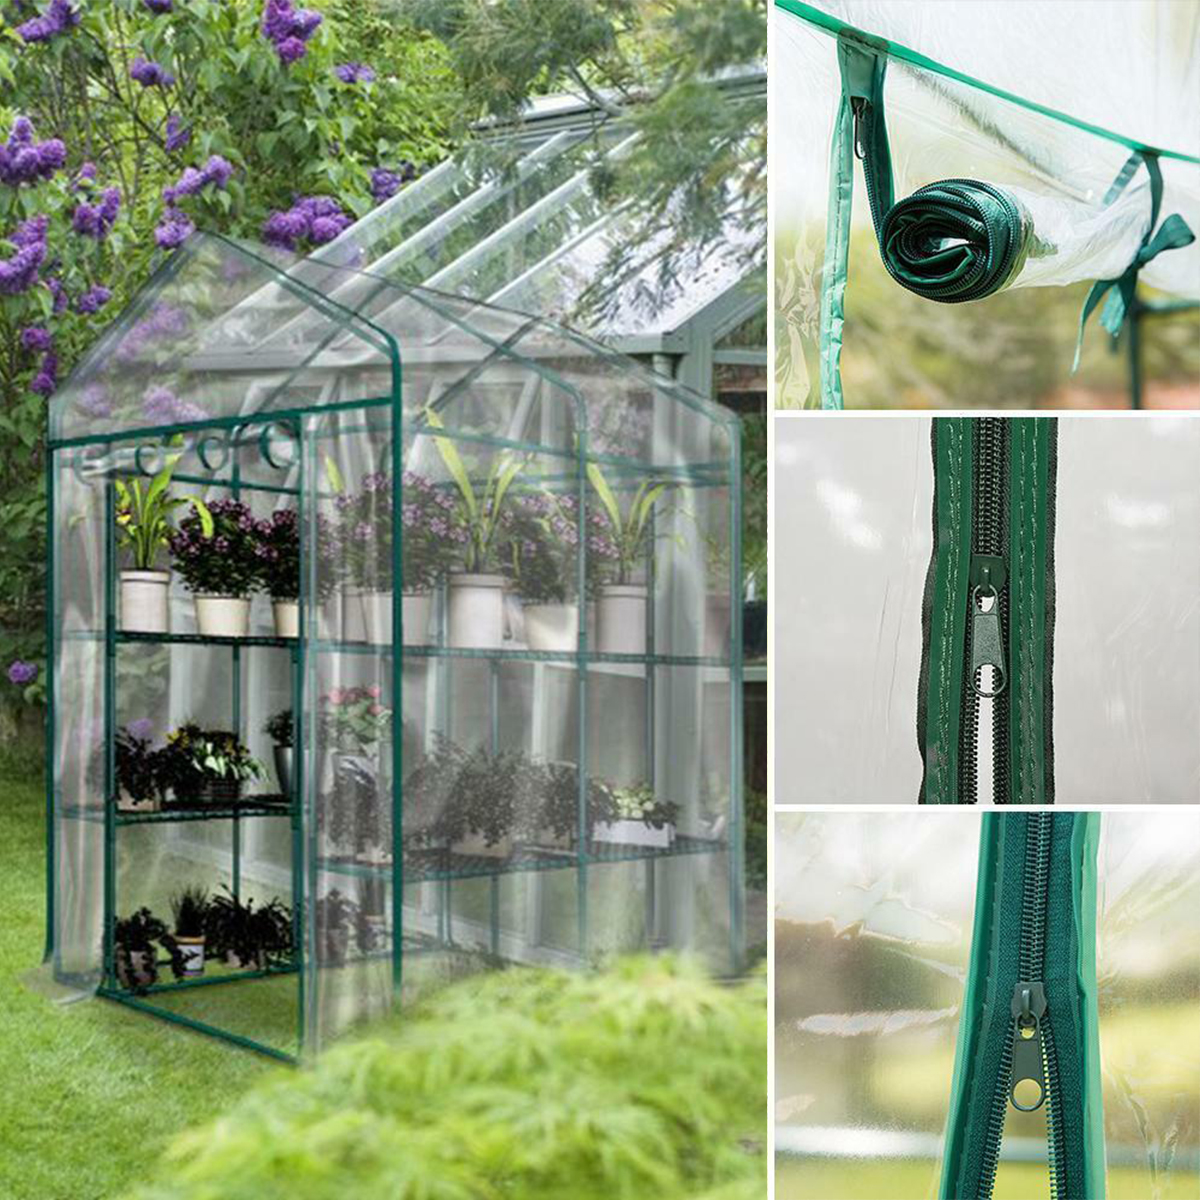 3-Tier-Portable-Greenhouse-6-Shelves-PVC-Cover-Garden-Cover-Plants-Flower-House-143X143X195cm-1551354-2